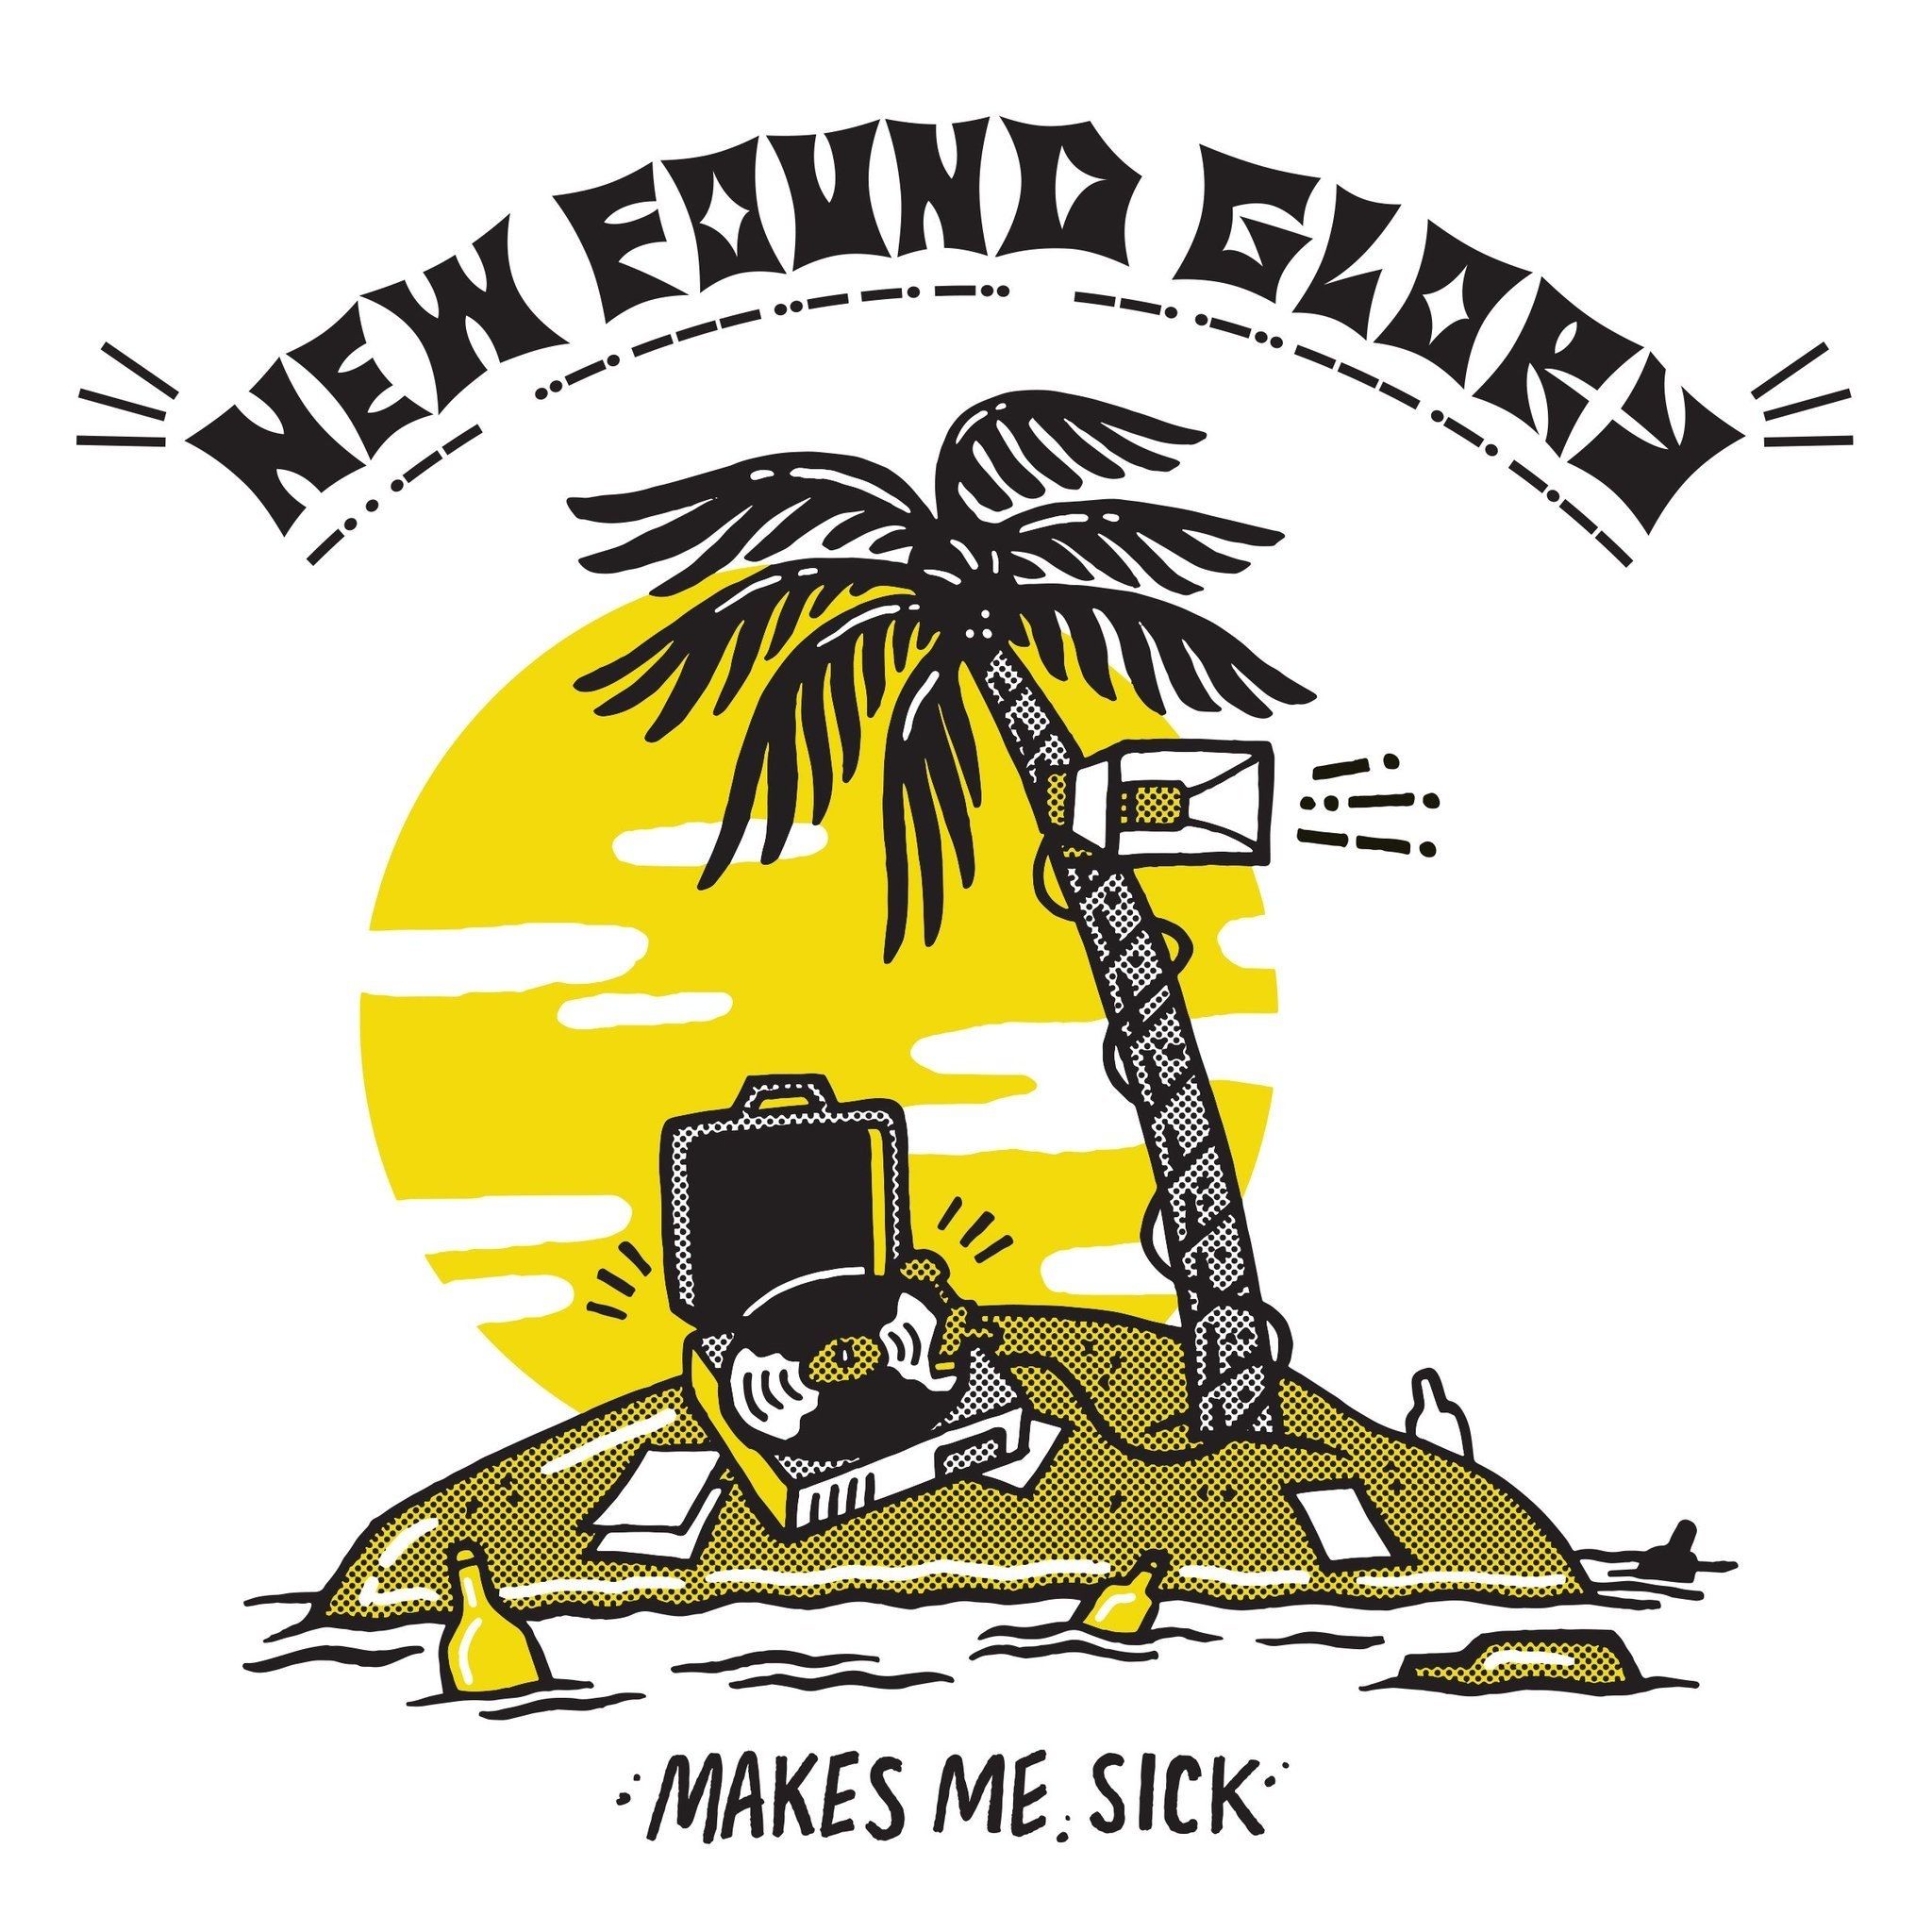 Imagem do álbum Makes Me Sick do(a) artista New Found Glory